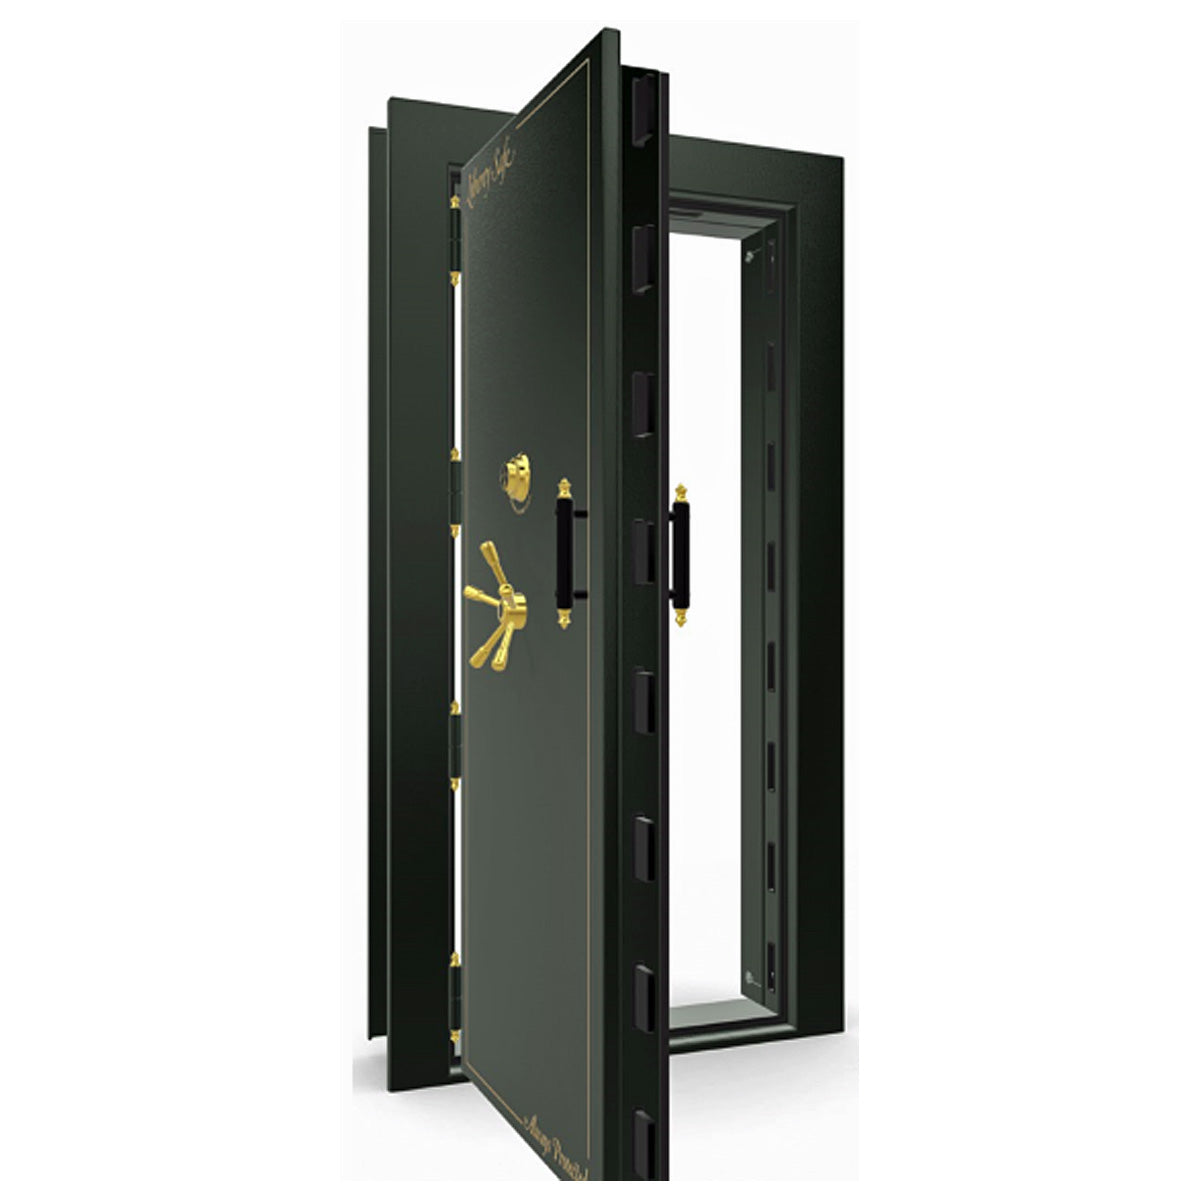 The Beast Vault Door in Black Gloss with Brass Electronic Lock, Left Outswing, door open.